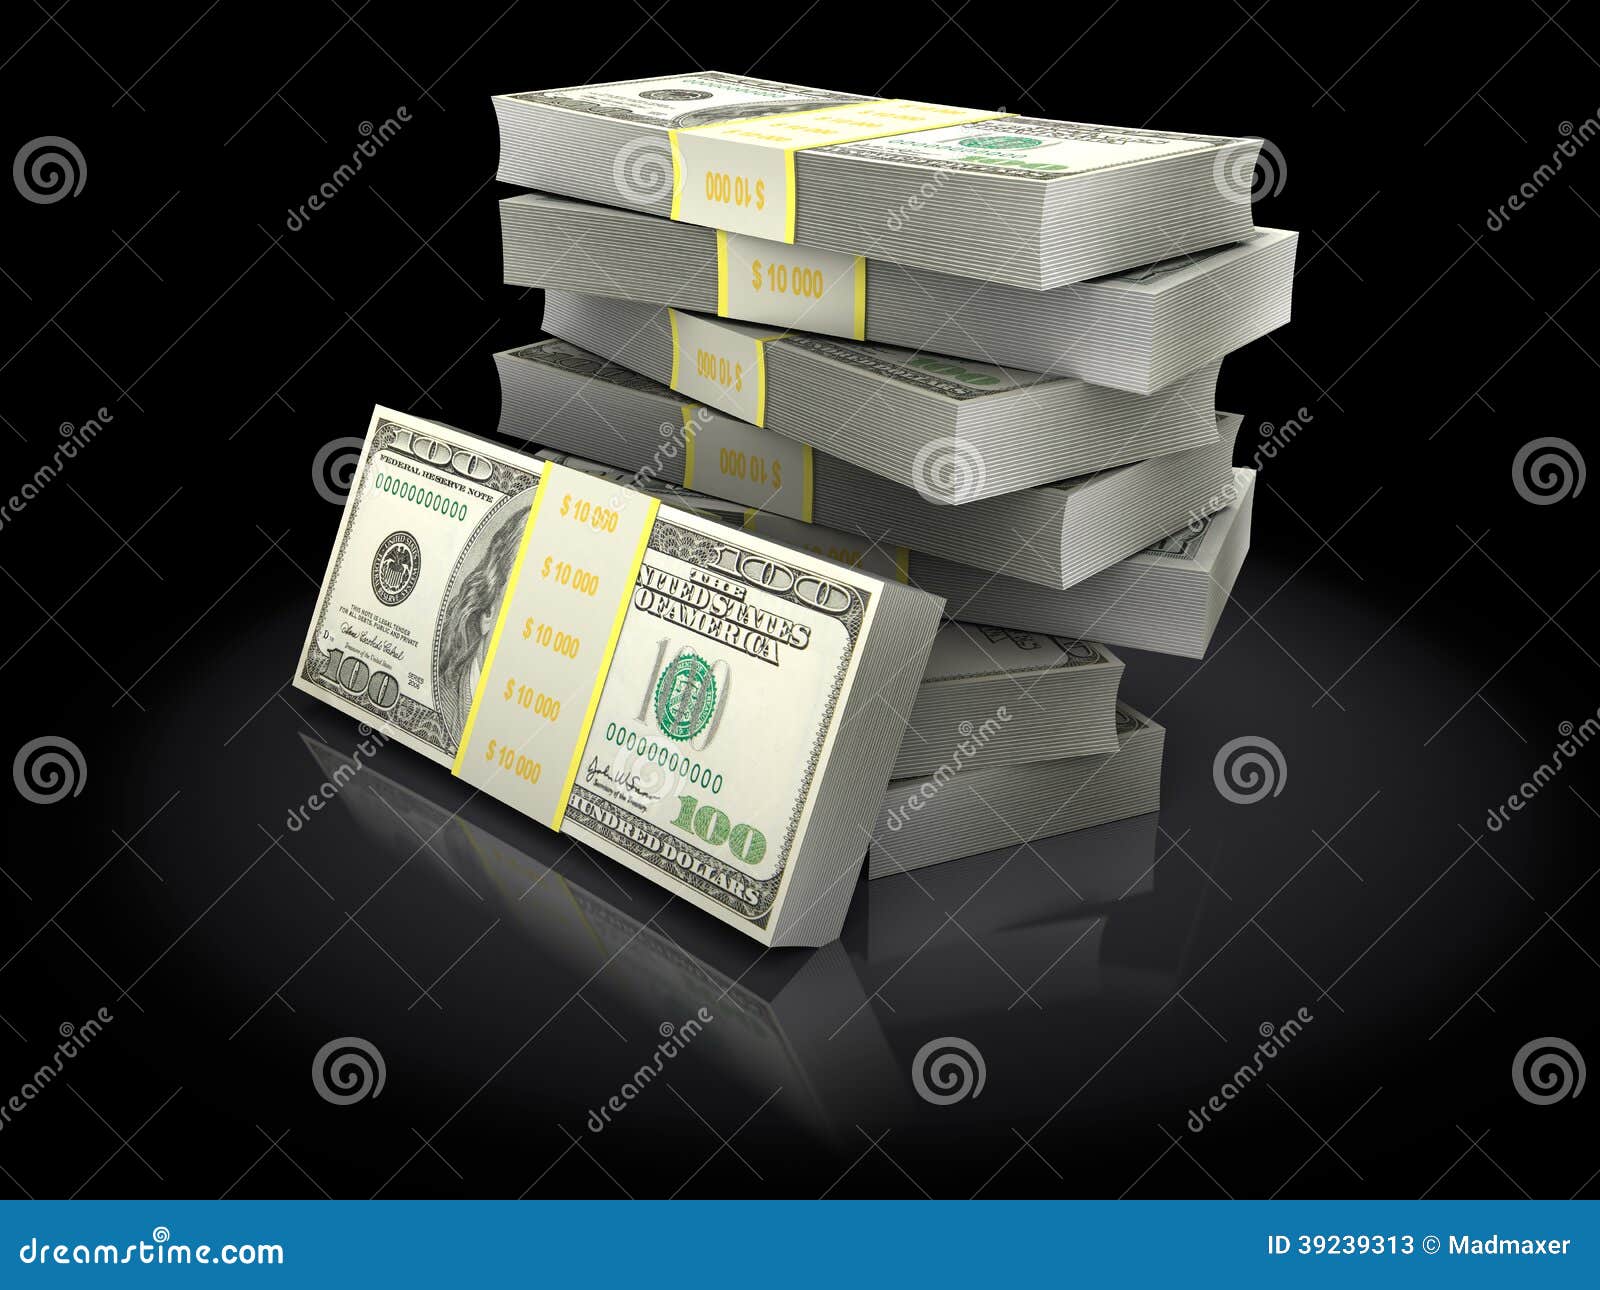 3d illustration of money stack over black background